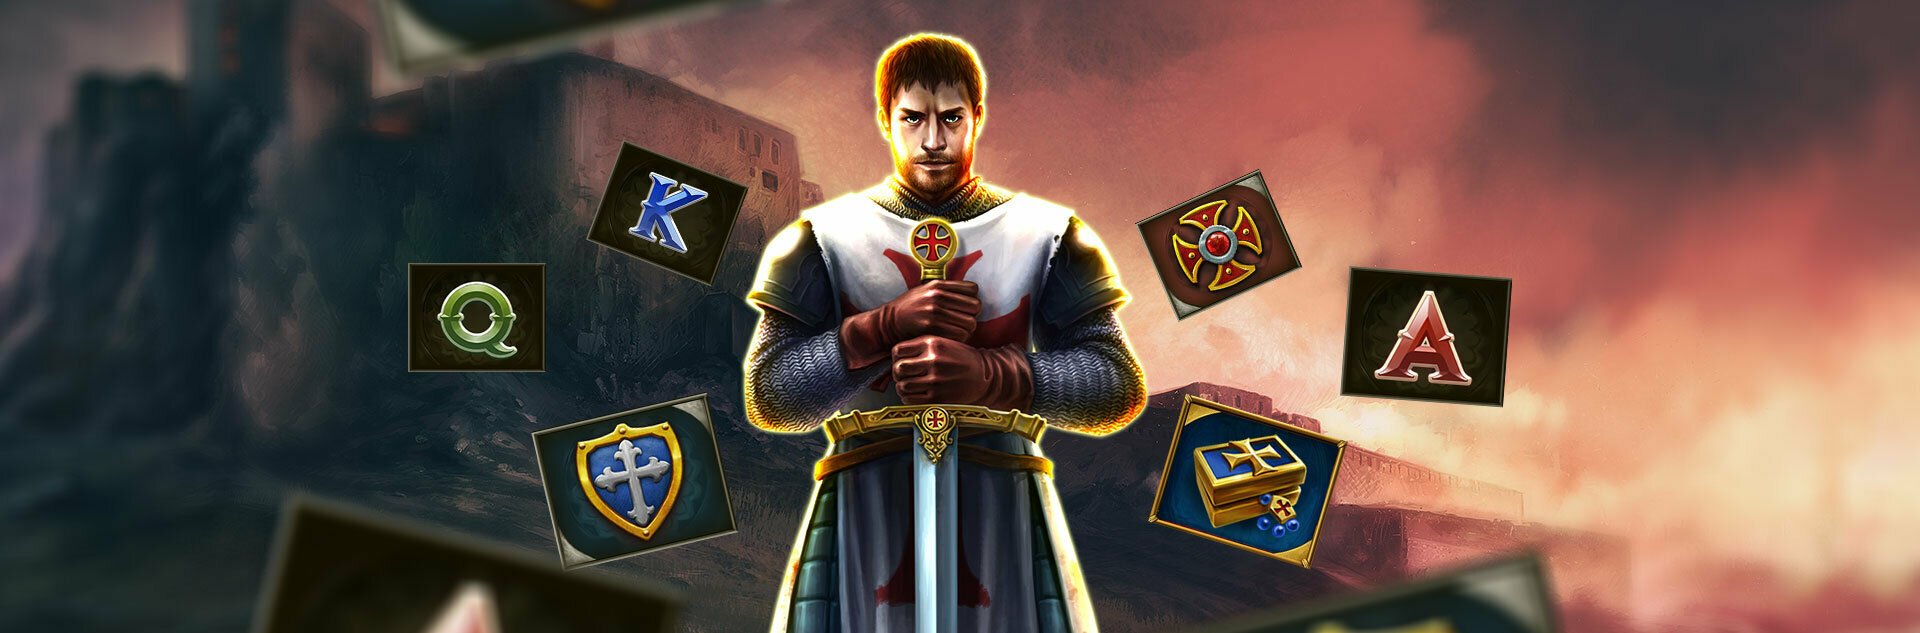 Play Crusader Free Slot